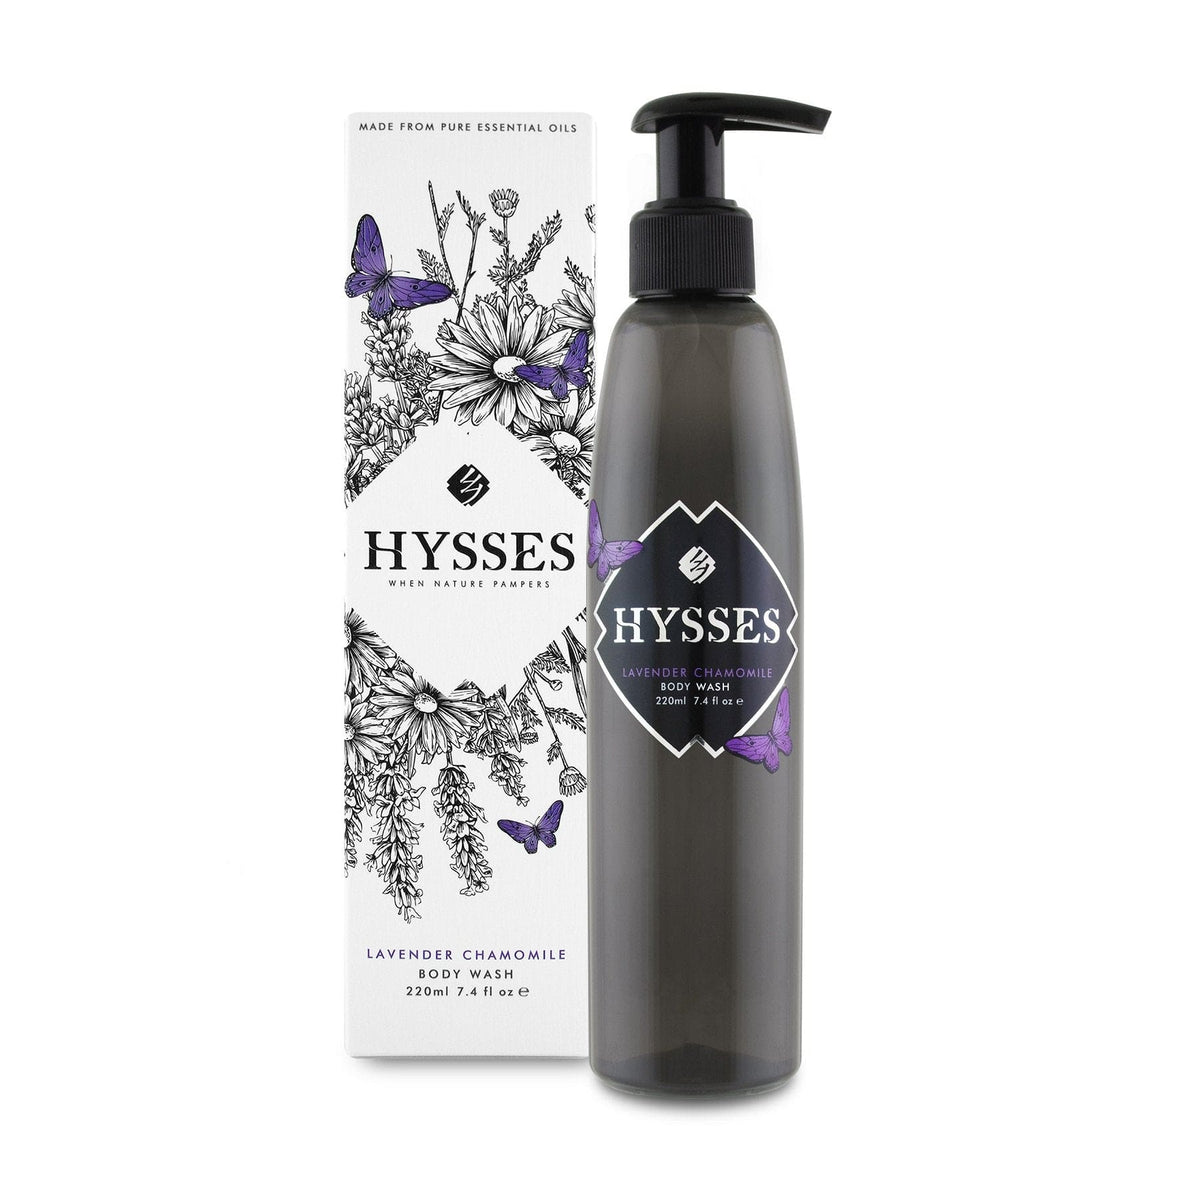 Hysses Body Care Body Wash Lavender Chamomile, 220ml